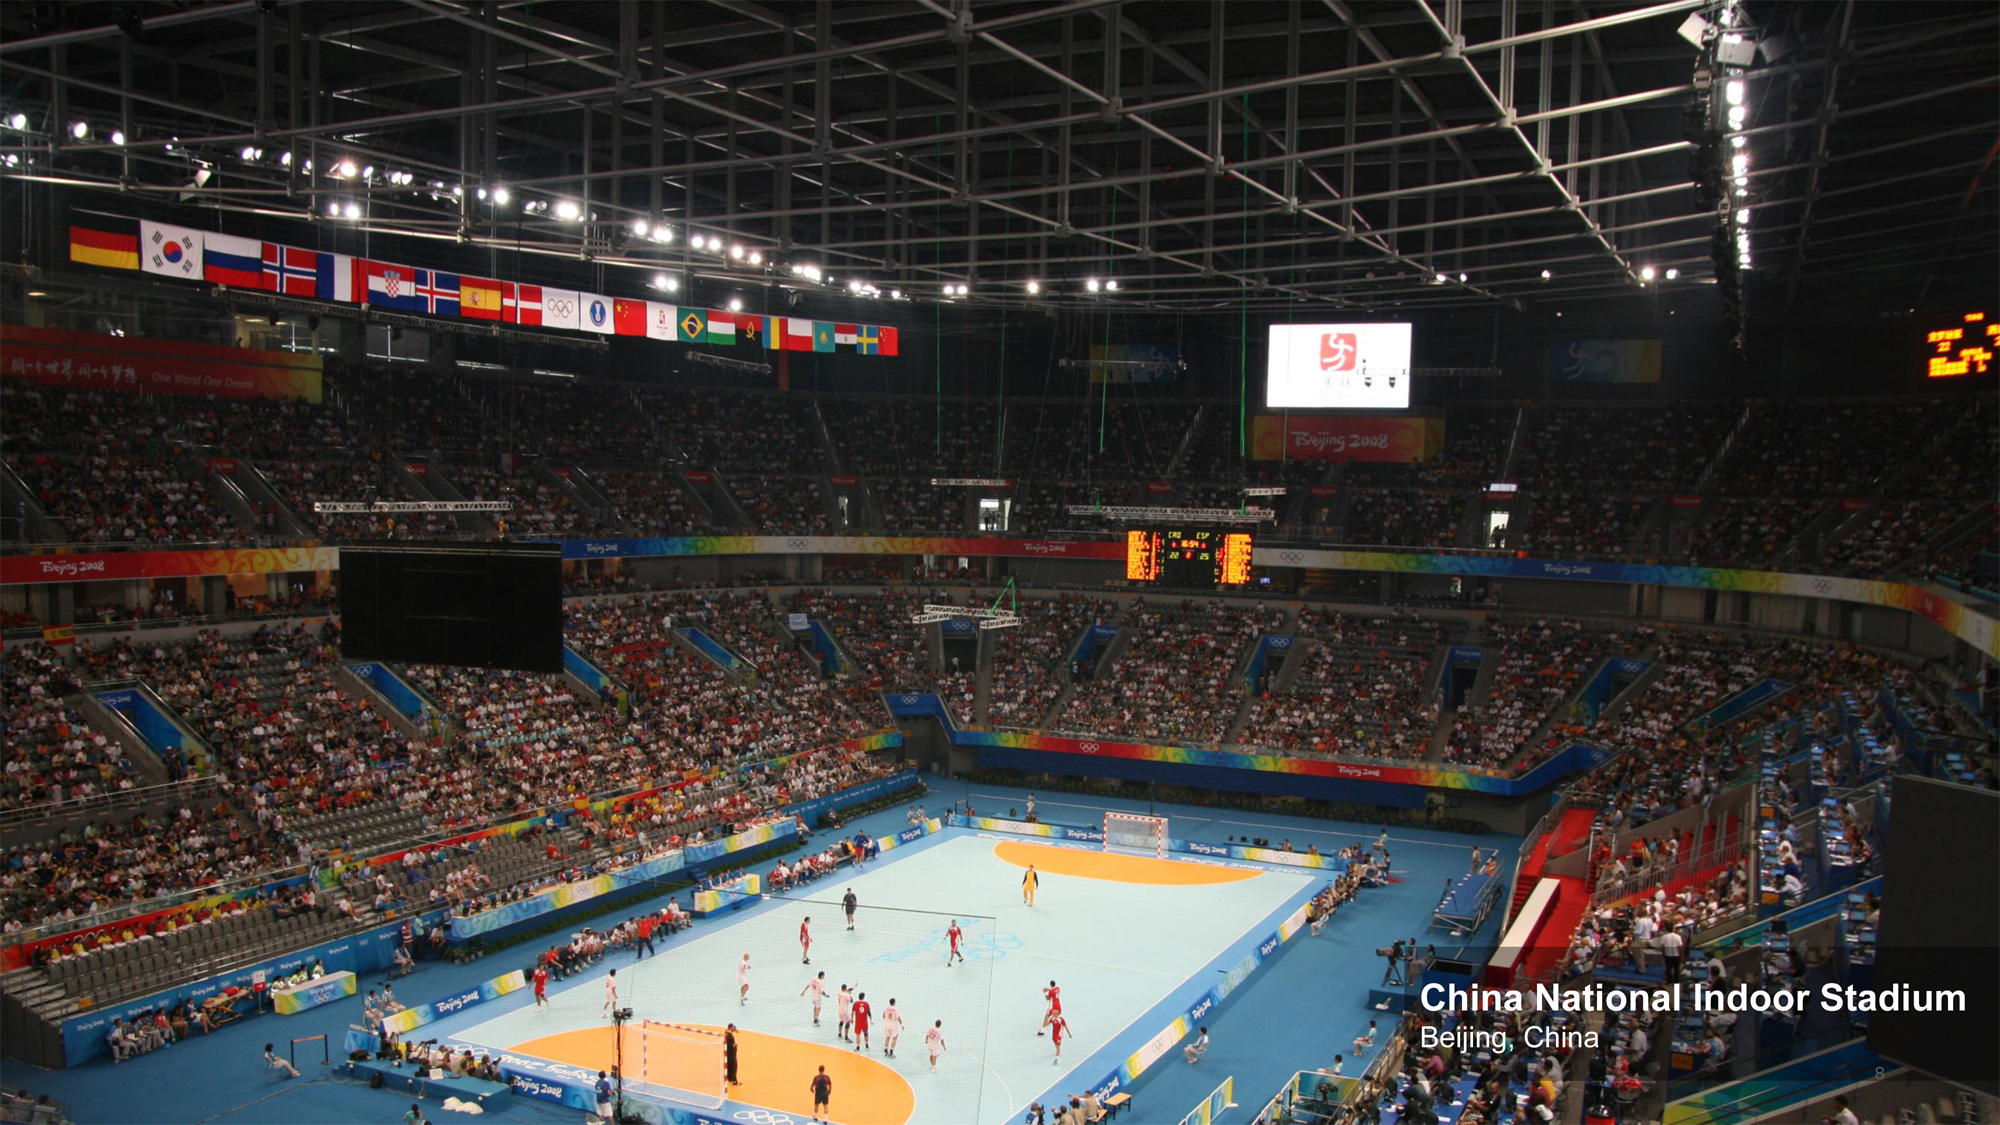 China National Indoor Stadium